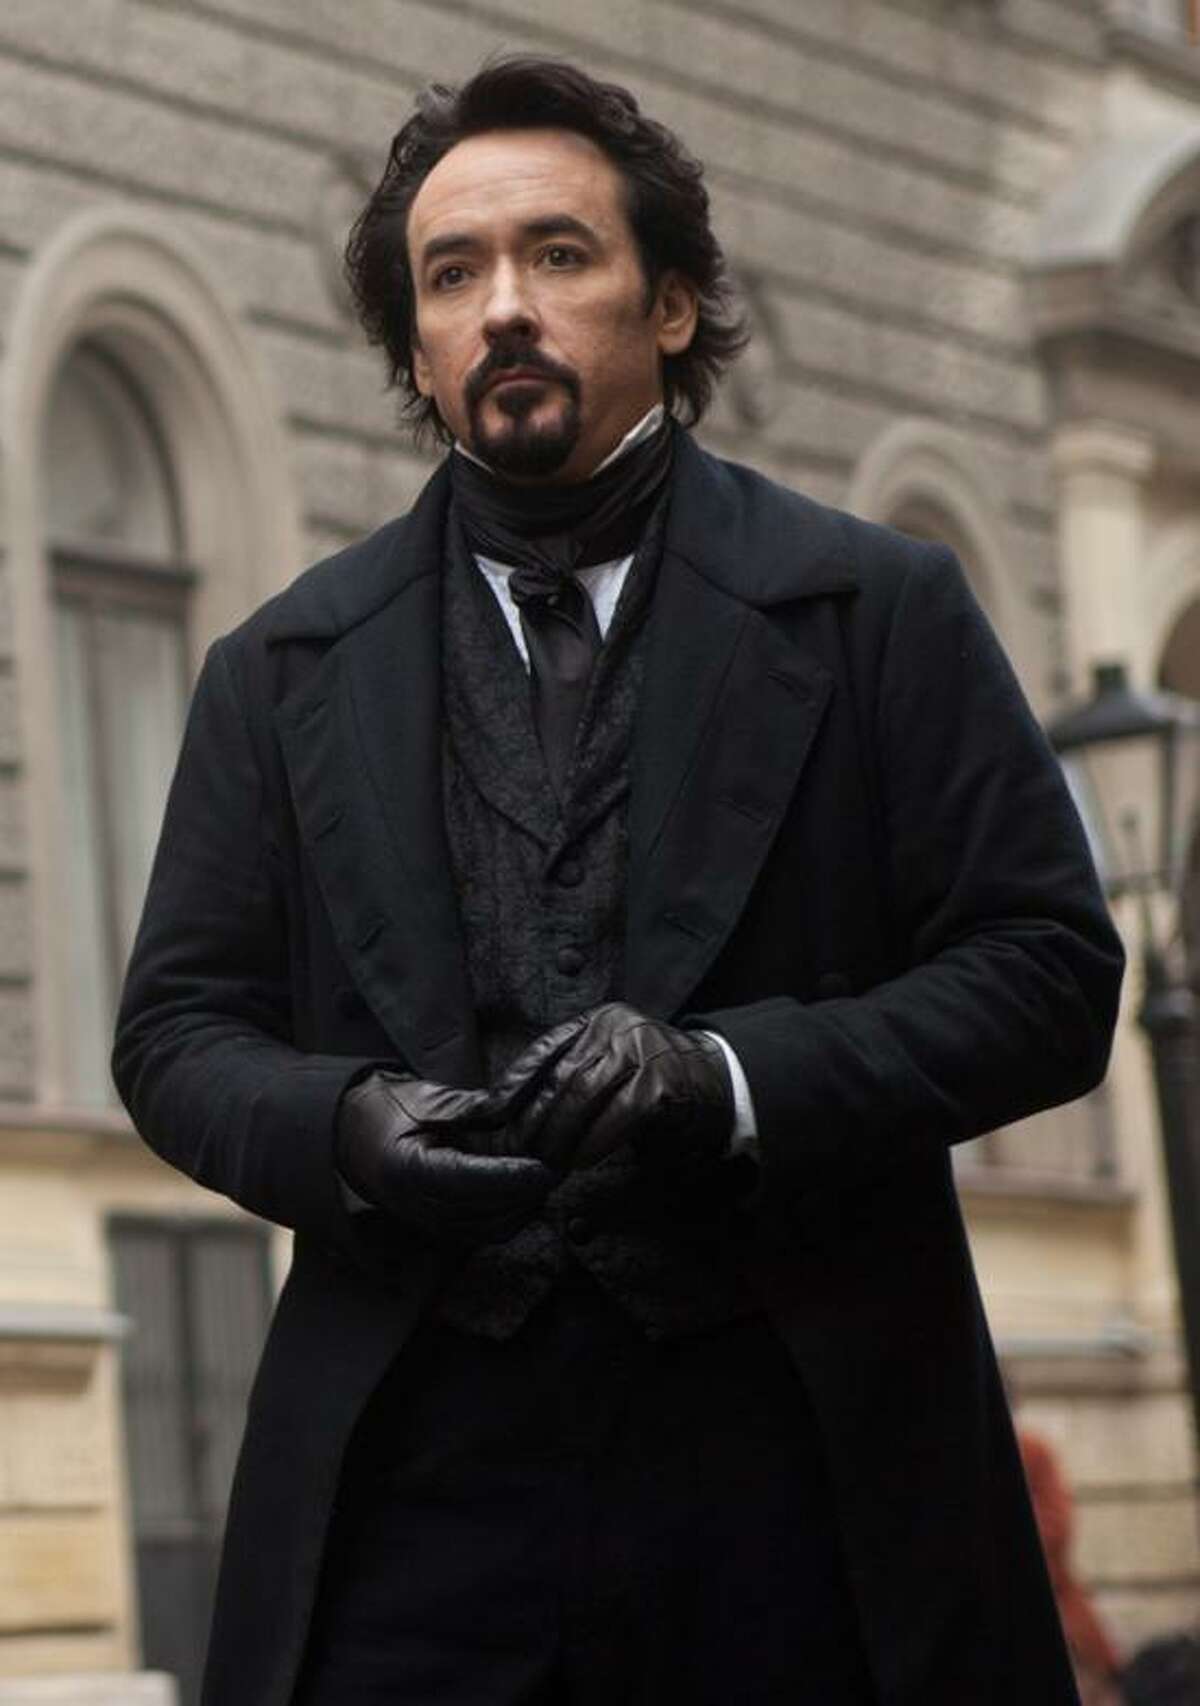 Larry Horricks/Relativity Media photo: John Cusack portrays Edgar Allan Poe in the gothic thriller "The Raven."